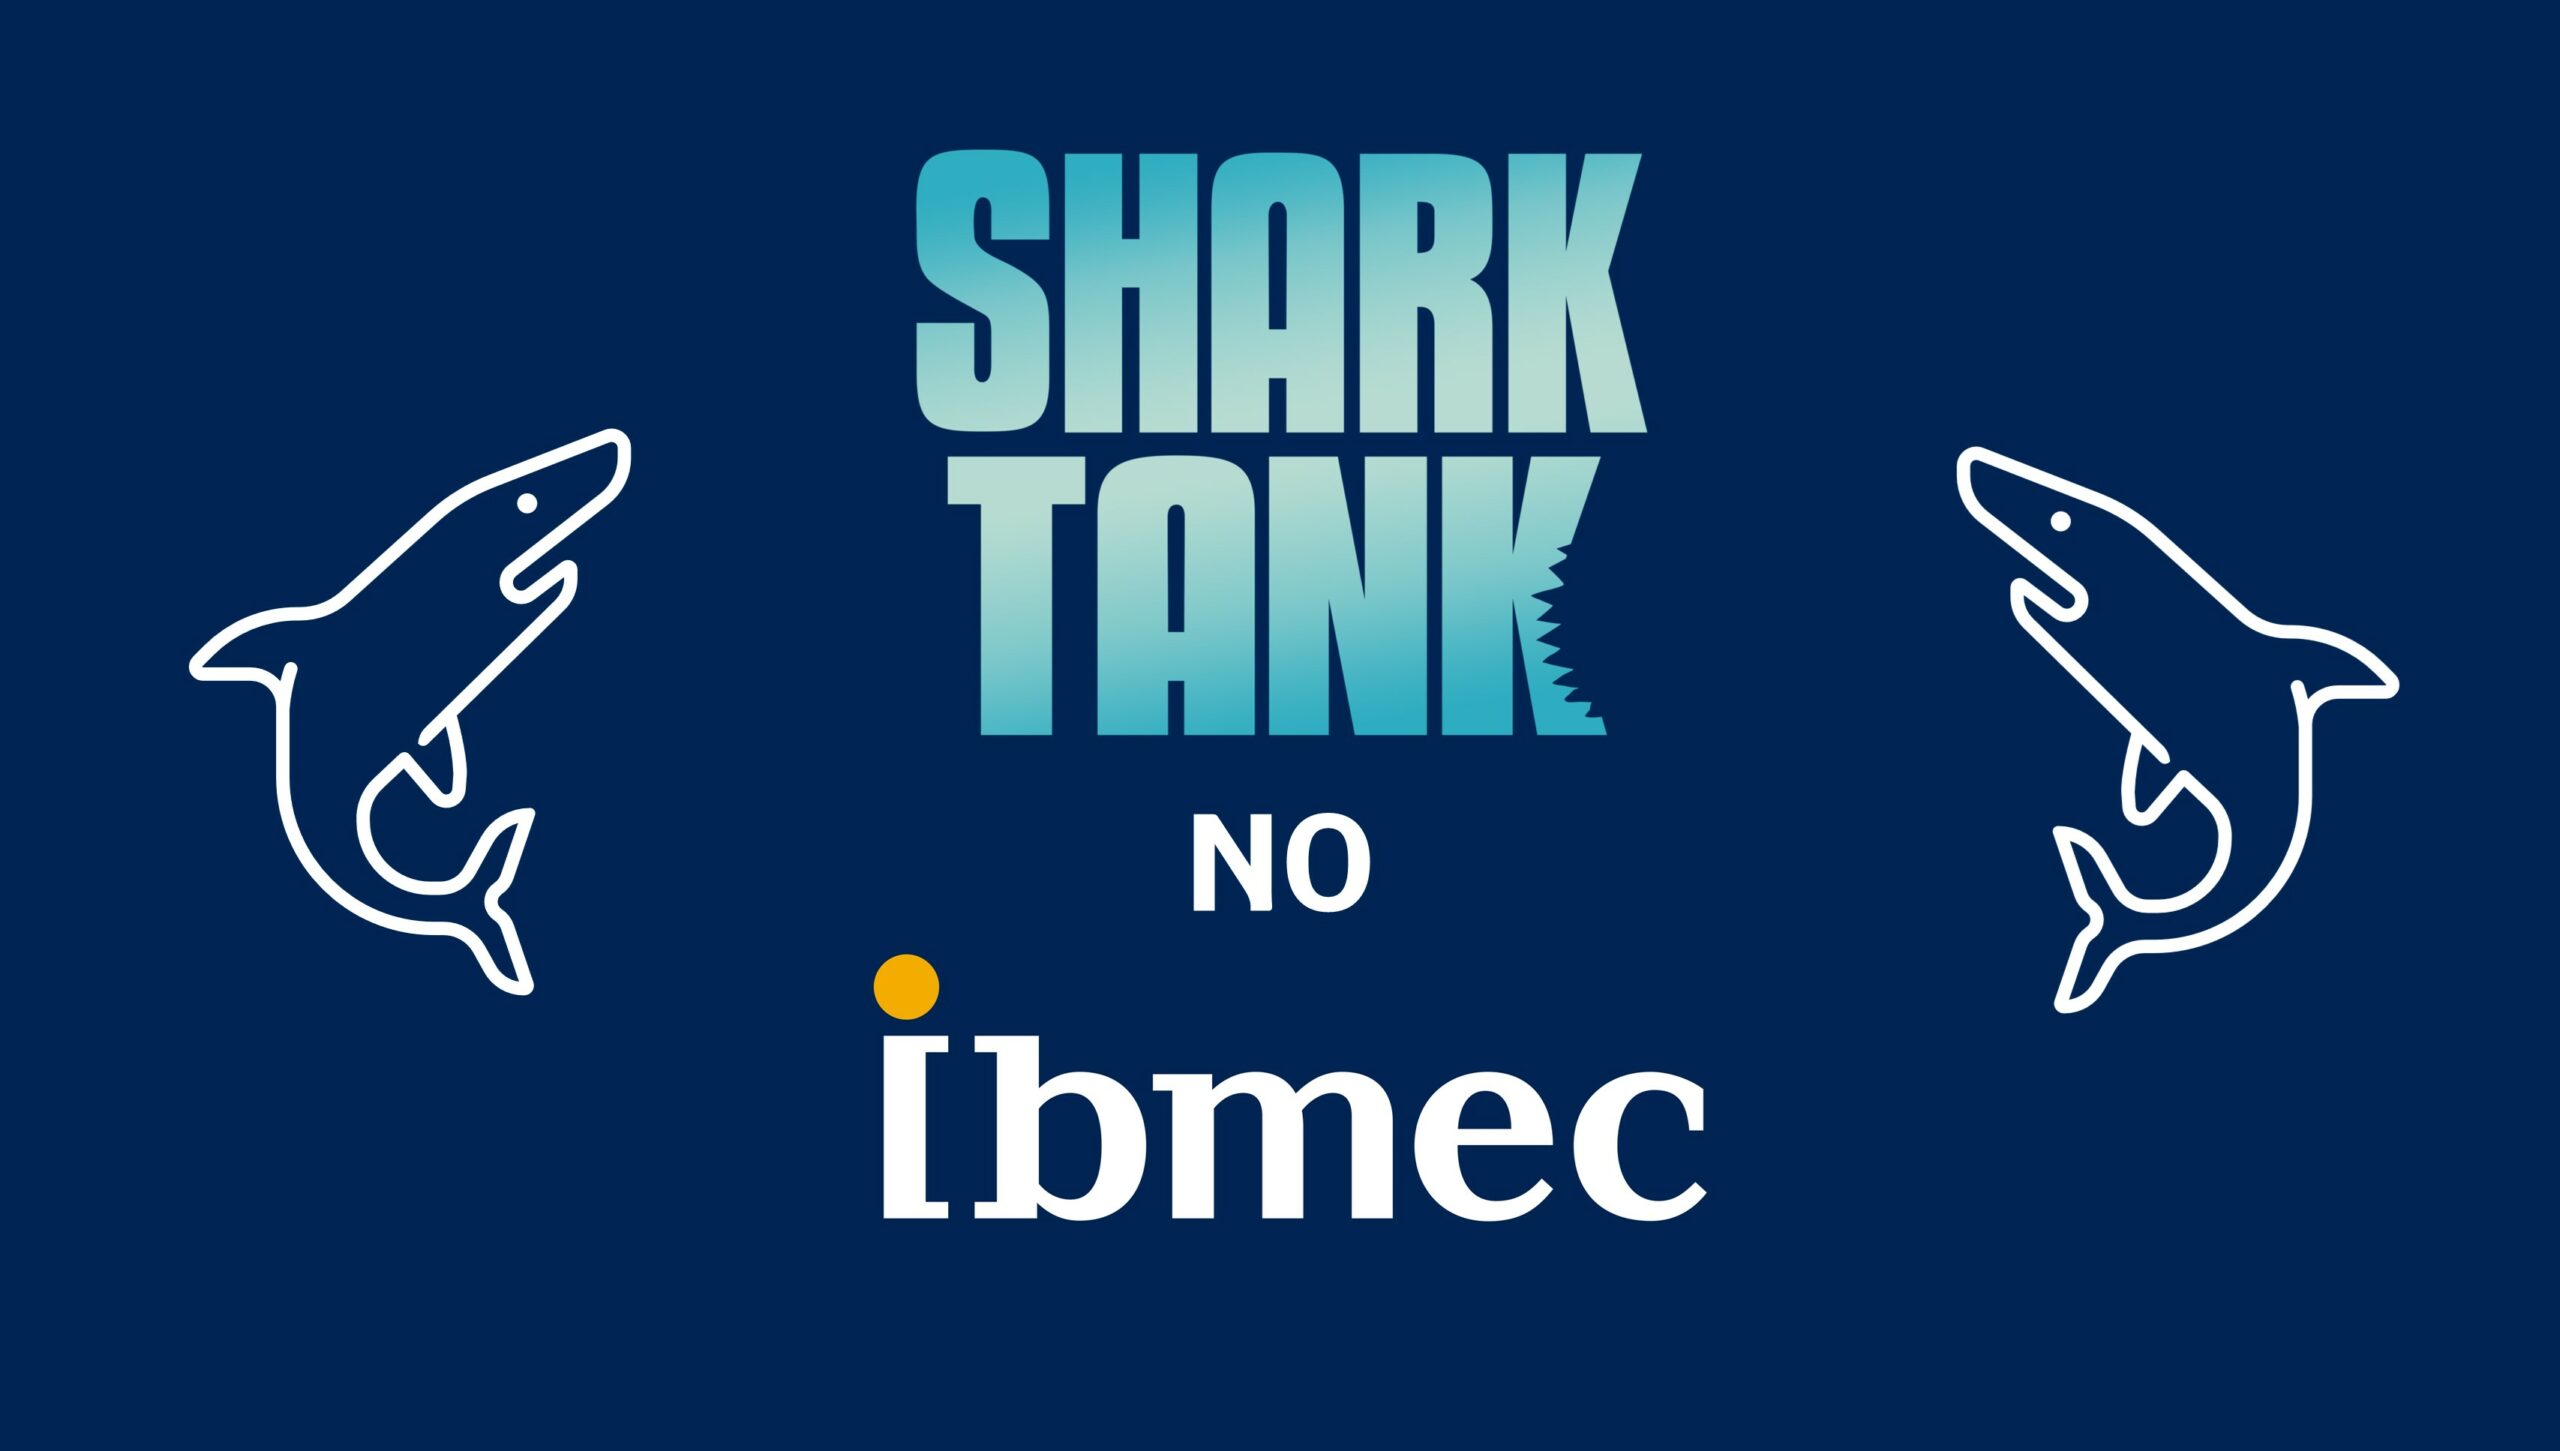 Shark Tank Brasil no Ibmec - Participe do evento com 4 Sharks